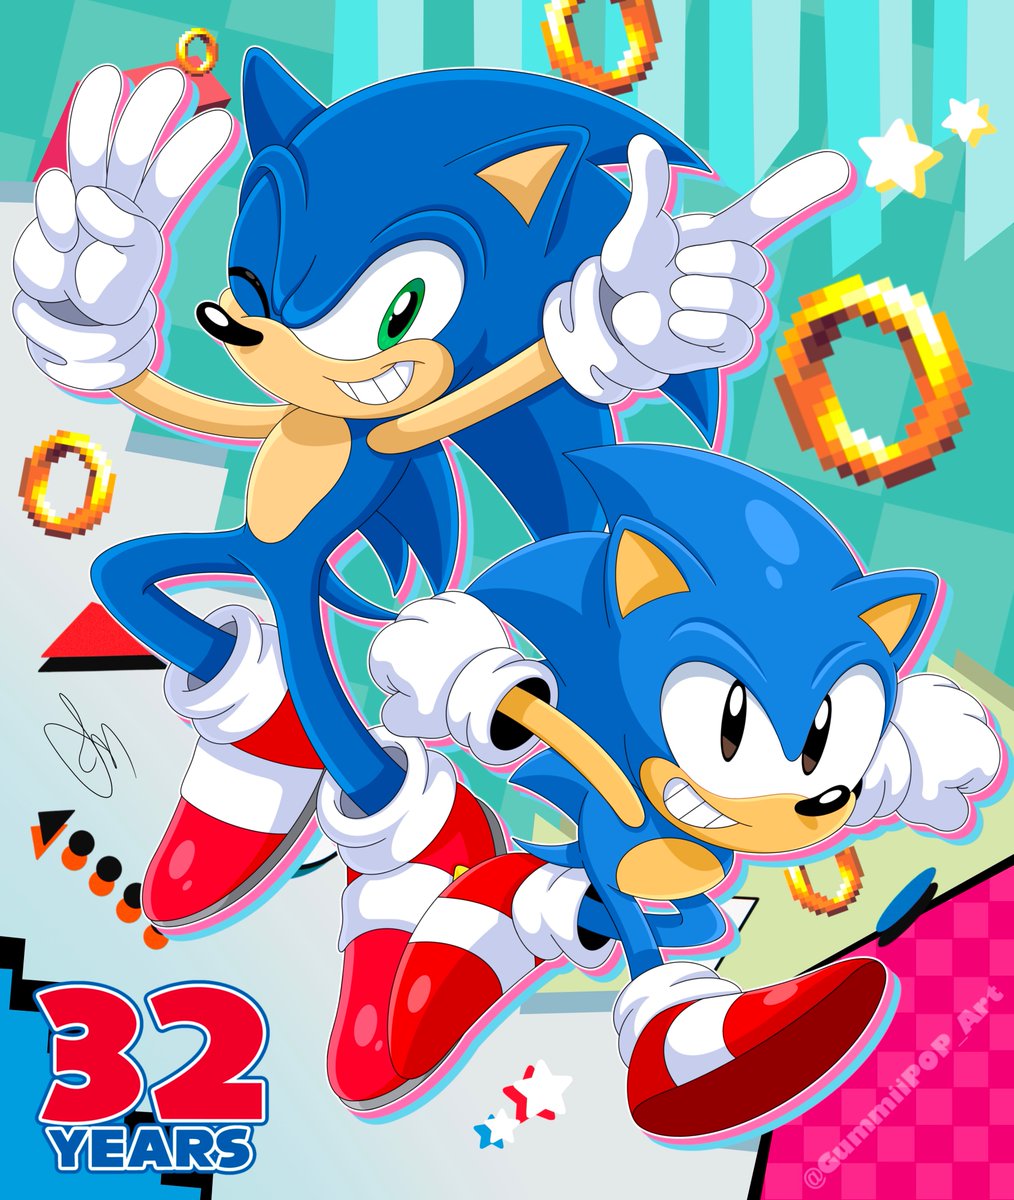 ✨💙~HAPPY 32ND BIRTHDAY SONIC~💙✨

/#SonicTheHedeghog #Sonic32nd